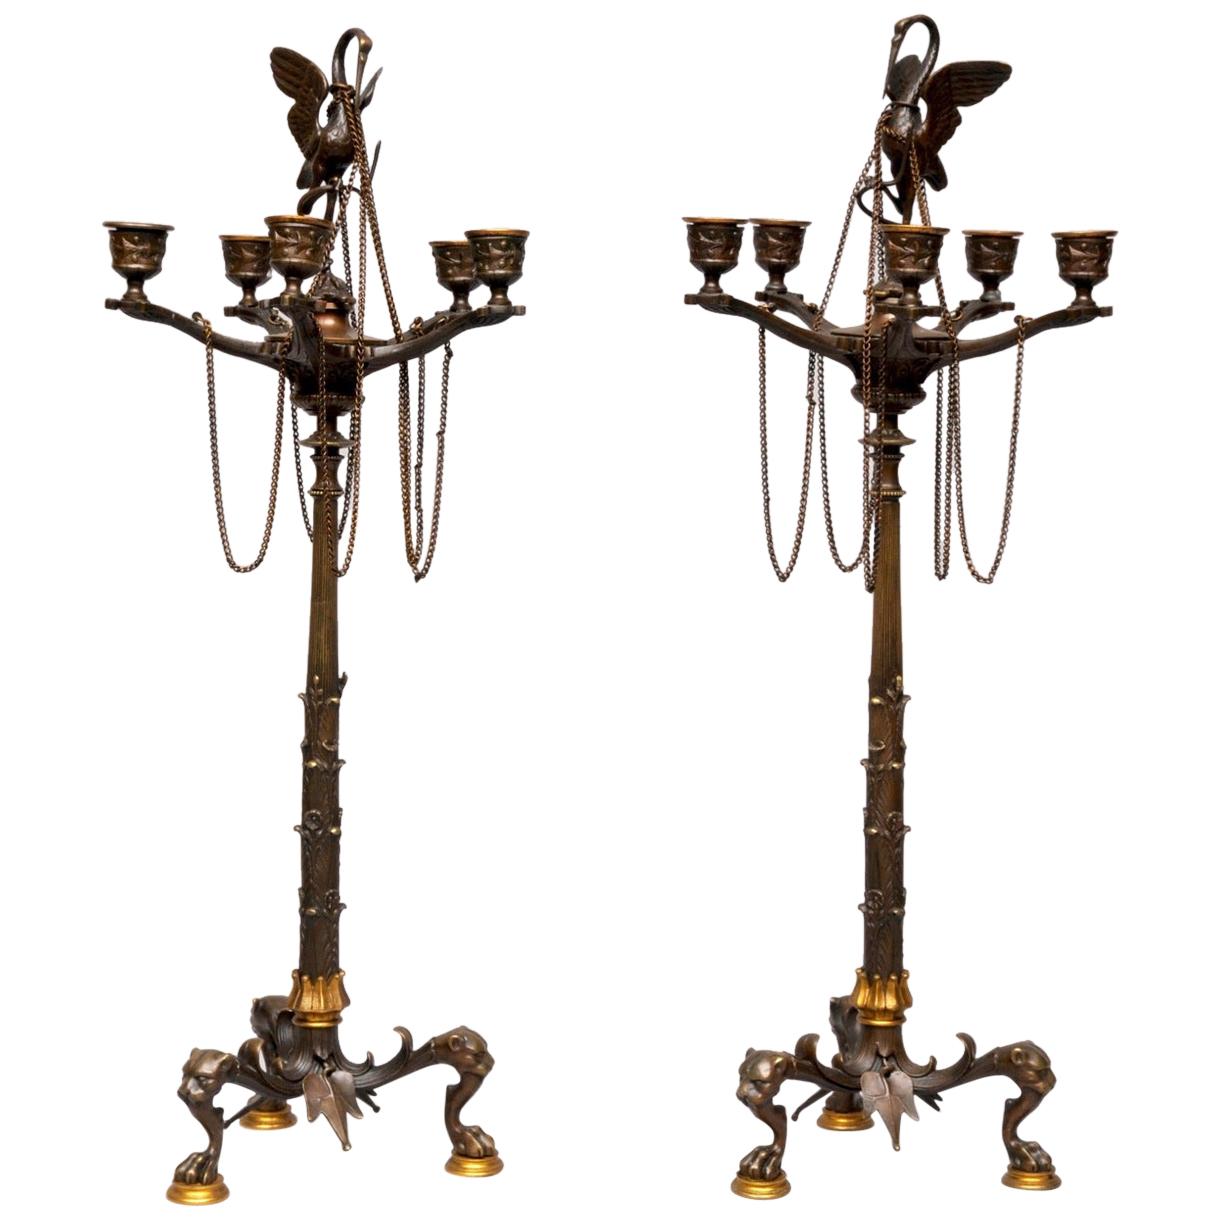 Paar viktorianische Kerzenständer aus Bronze, um 1840-1860